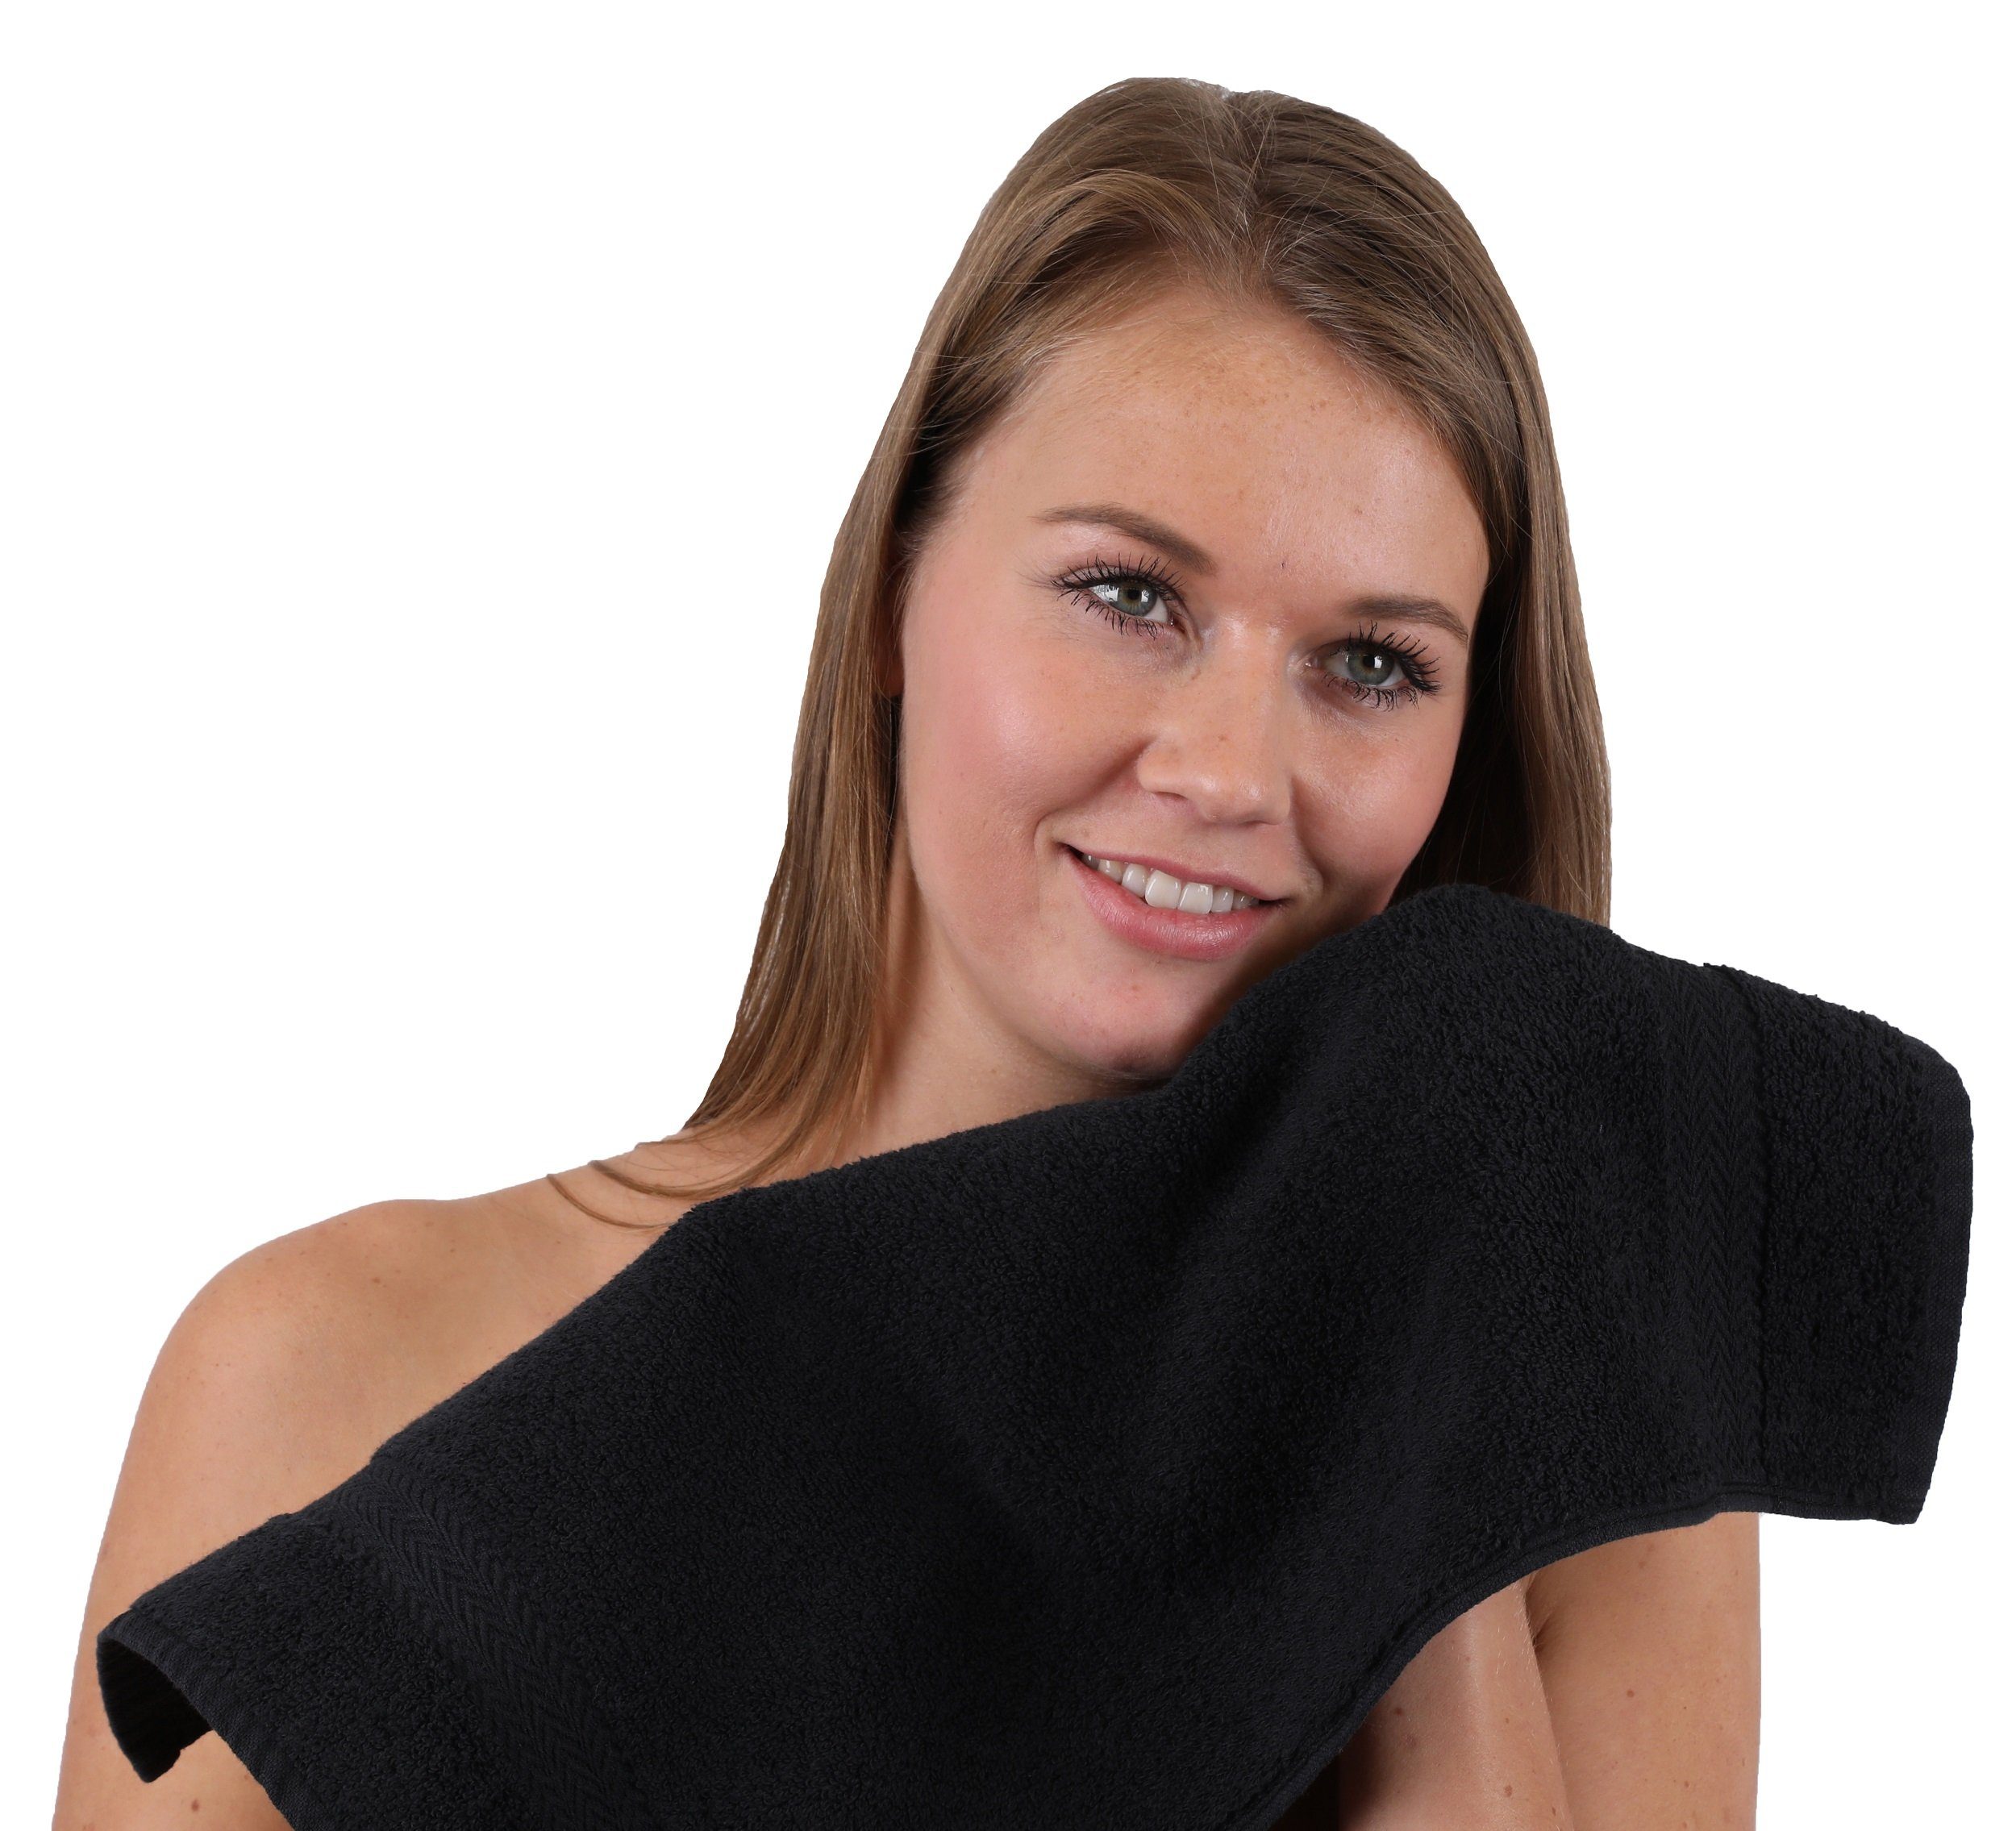 Betz Handtuch Farbe schwarz, Handtuch-Set und 10-TLG. Baumwolle Set 100% dunkelblau